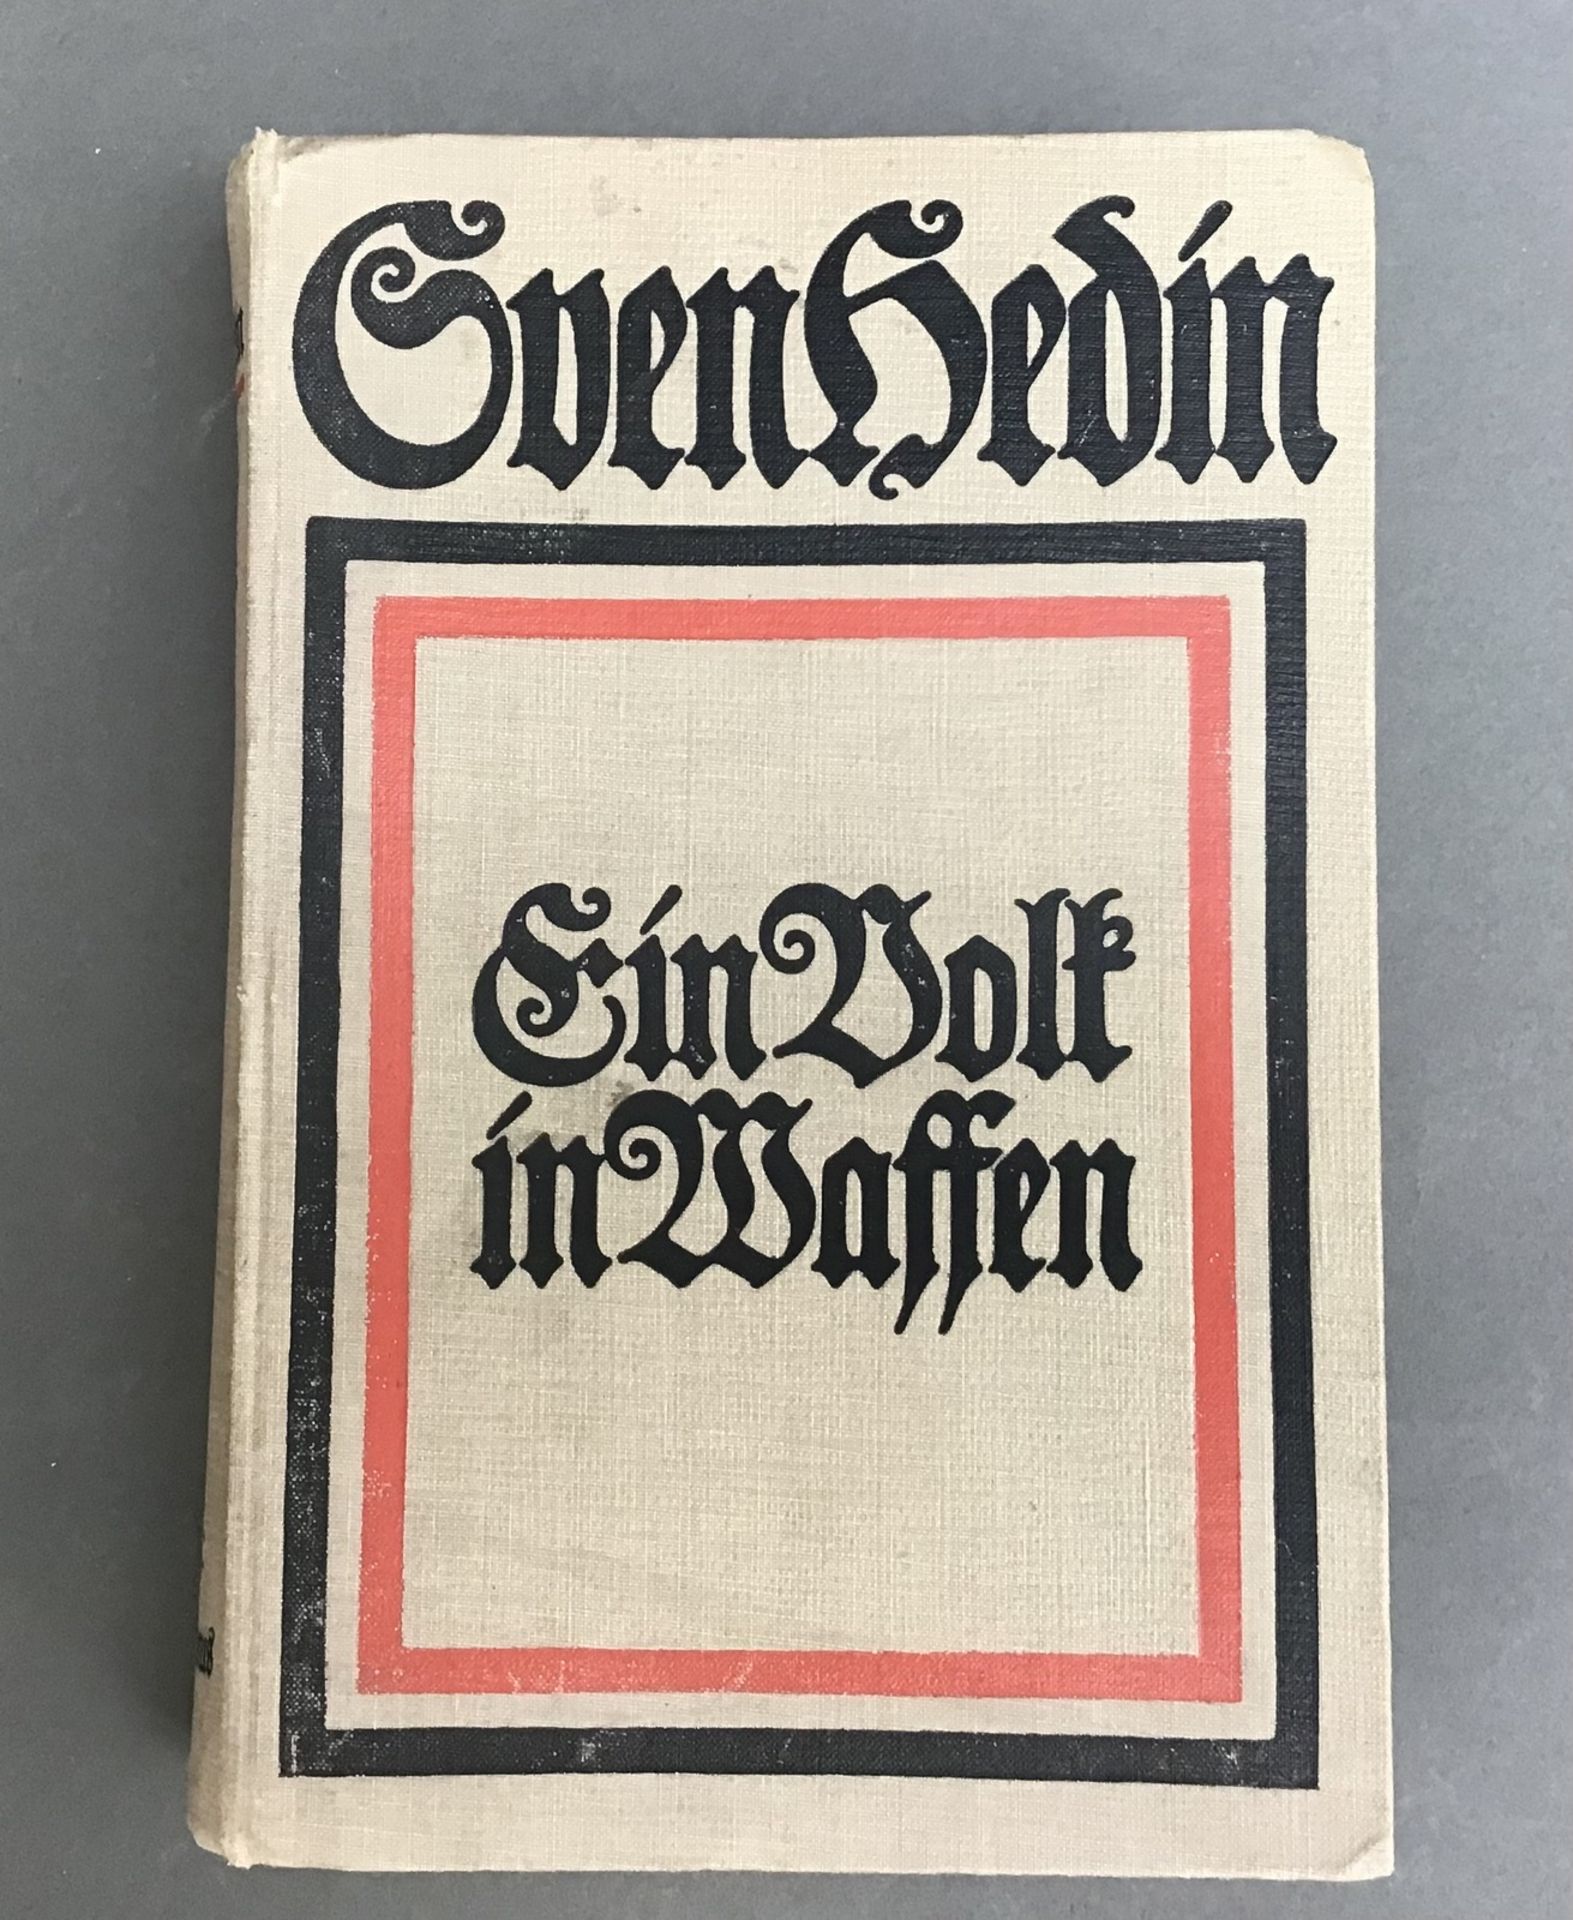 Sven Hedin, "Ein Volk in Waffen", Brockhausausgabe 1915, ein Augenzeugenbericht mit vielen